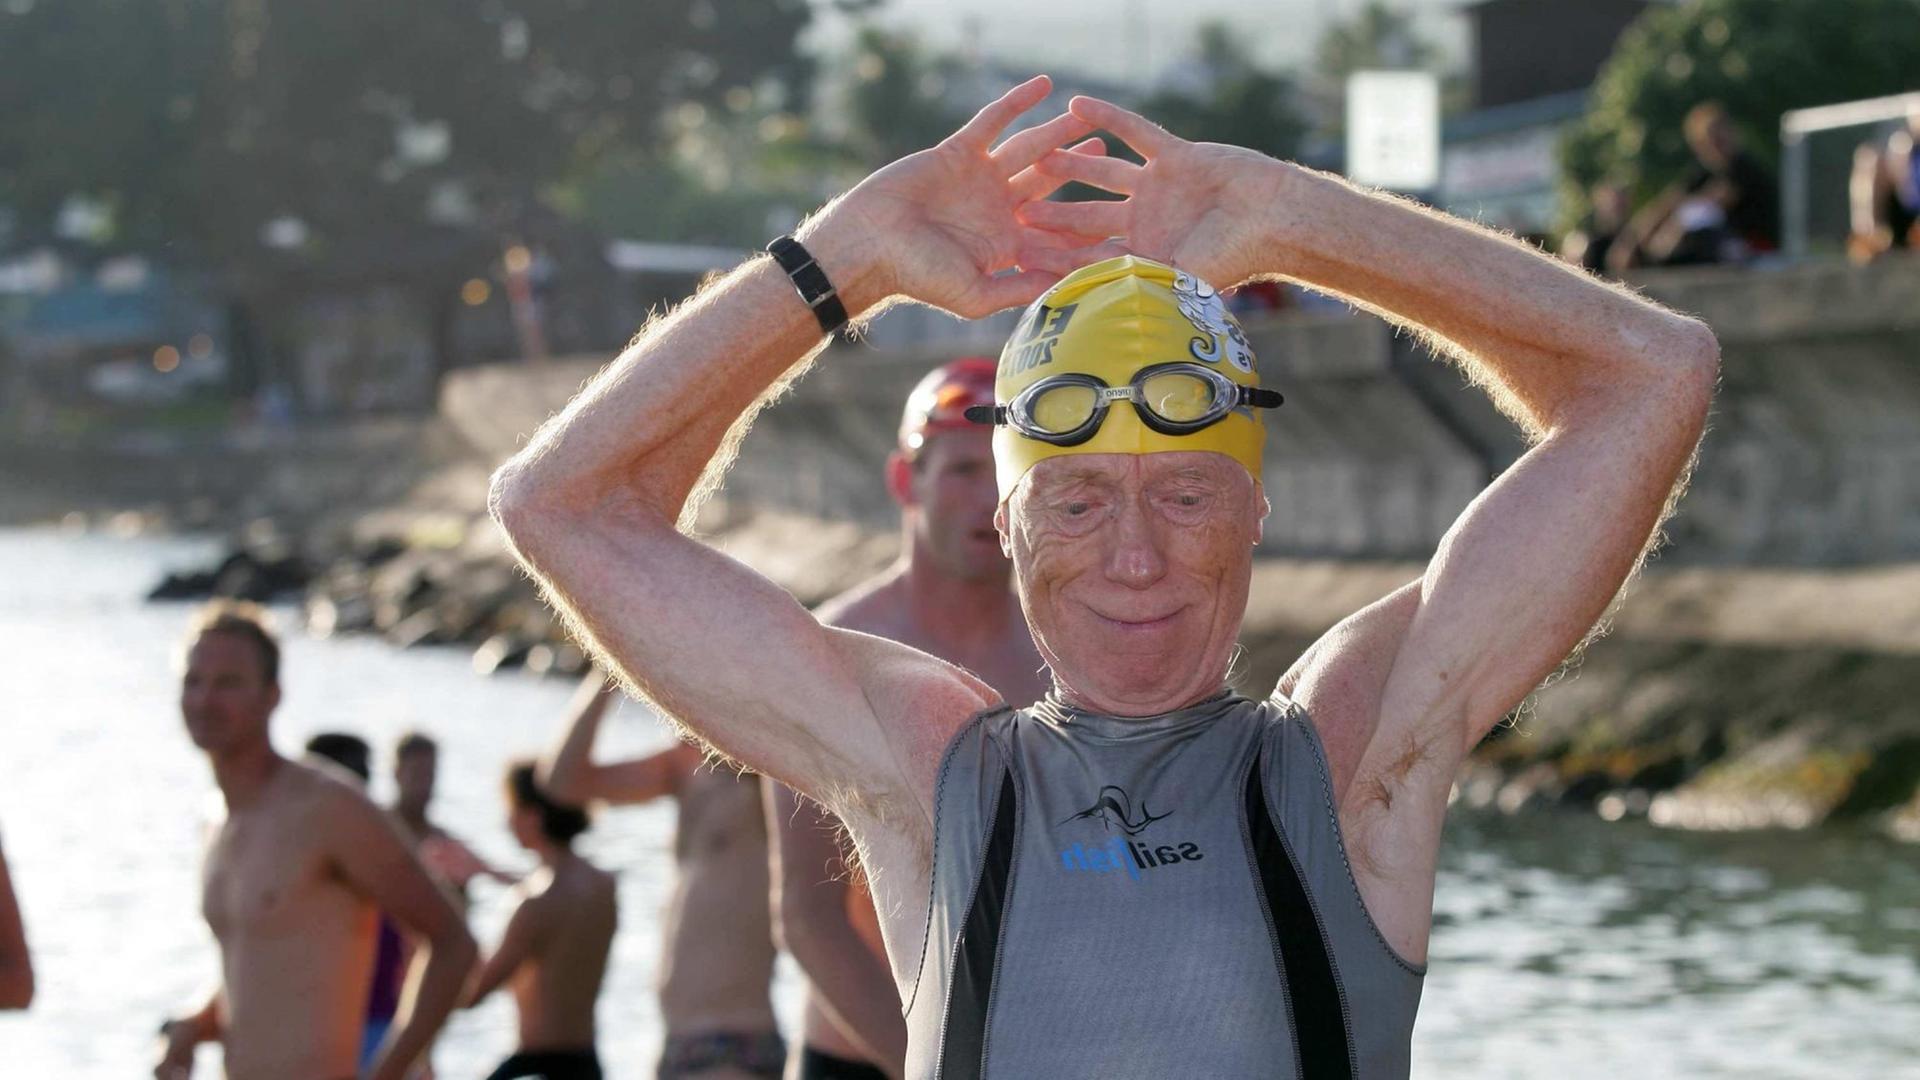 Der Berliner Heinz Sowinski beim Schwimmtraining am Dienstag (09.10.2007) in der Kailua Kona, Hawaii. Der 70-jährige ist der älteste Deutsche Teilnehmer an der Ironman-Triathlon-WM auf Hawaii.